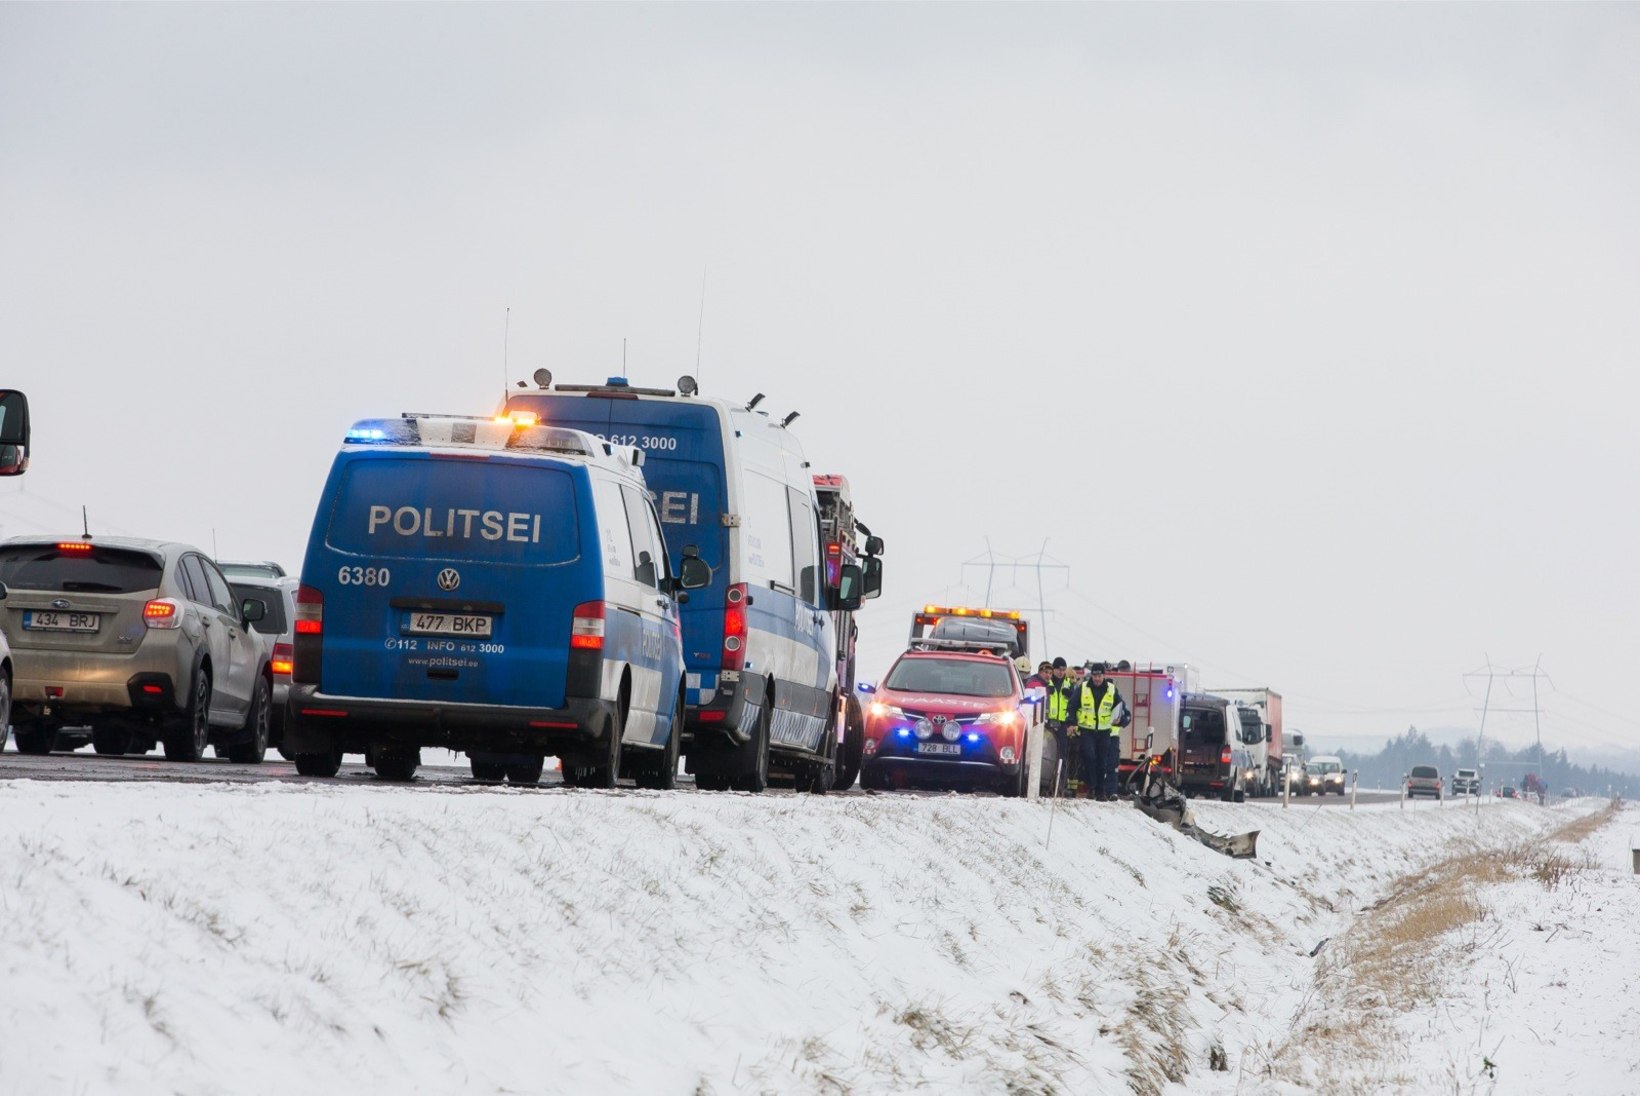 FOTO | Ahelkokkupõrge häirib Tallinna-Pärnu maanteel liiklust